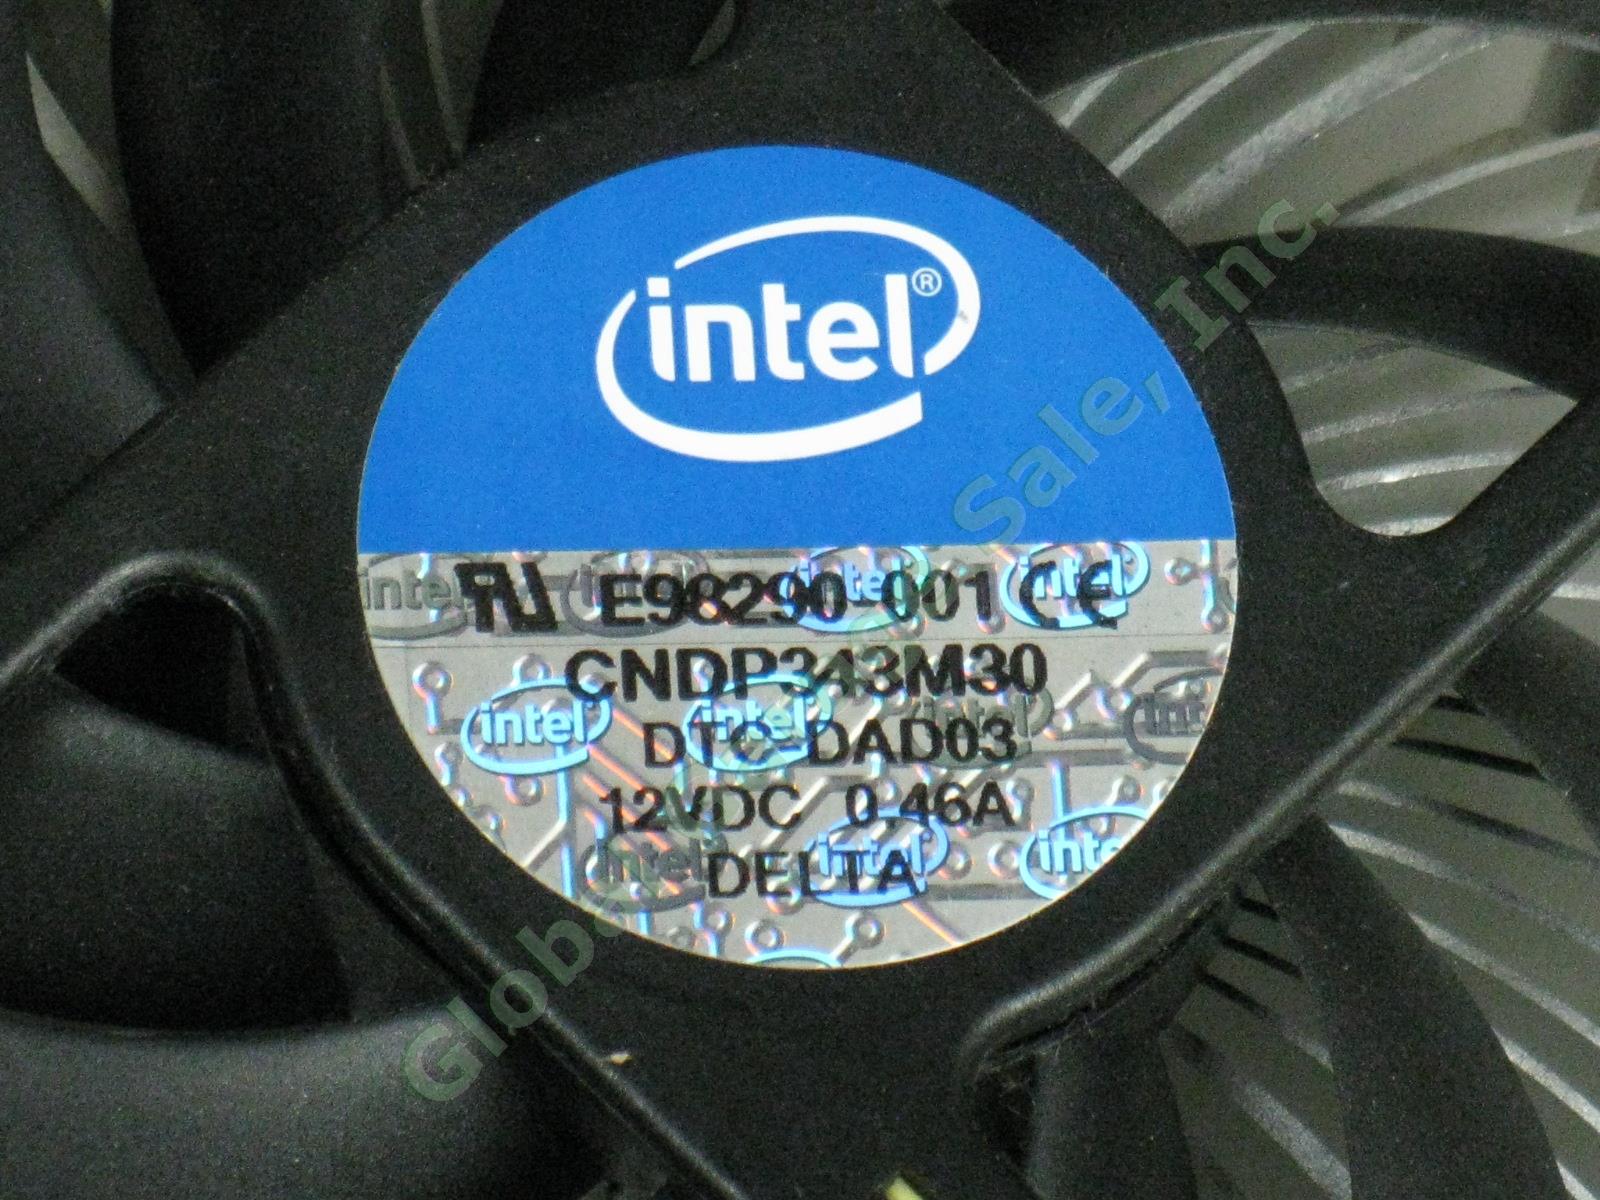 25 NEW Intel E98290-001 LGA1155 Heatsink CPU Cooler Cooling Fans Lot Intel i3 NR 3